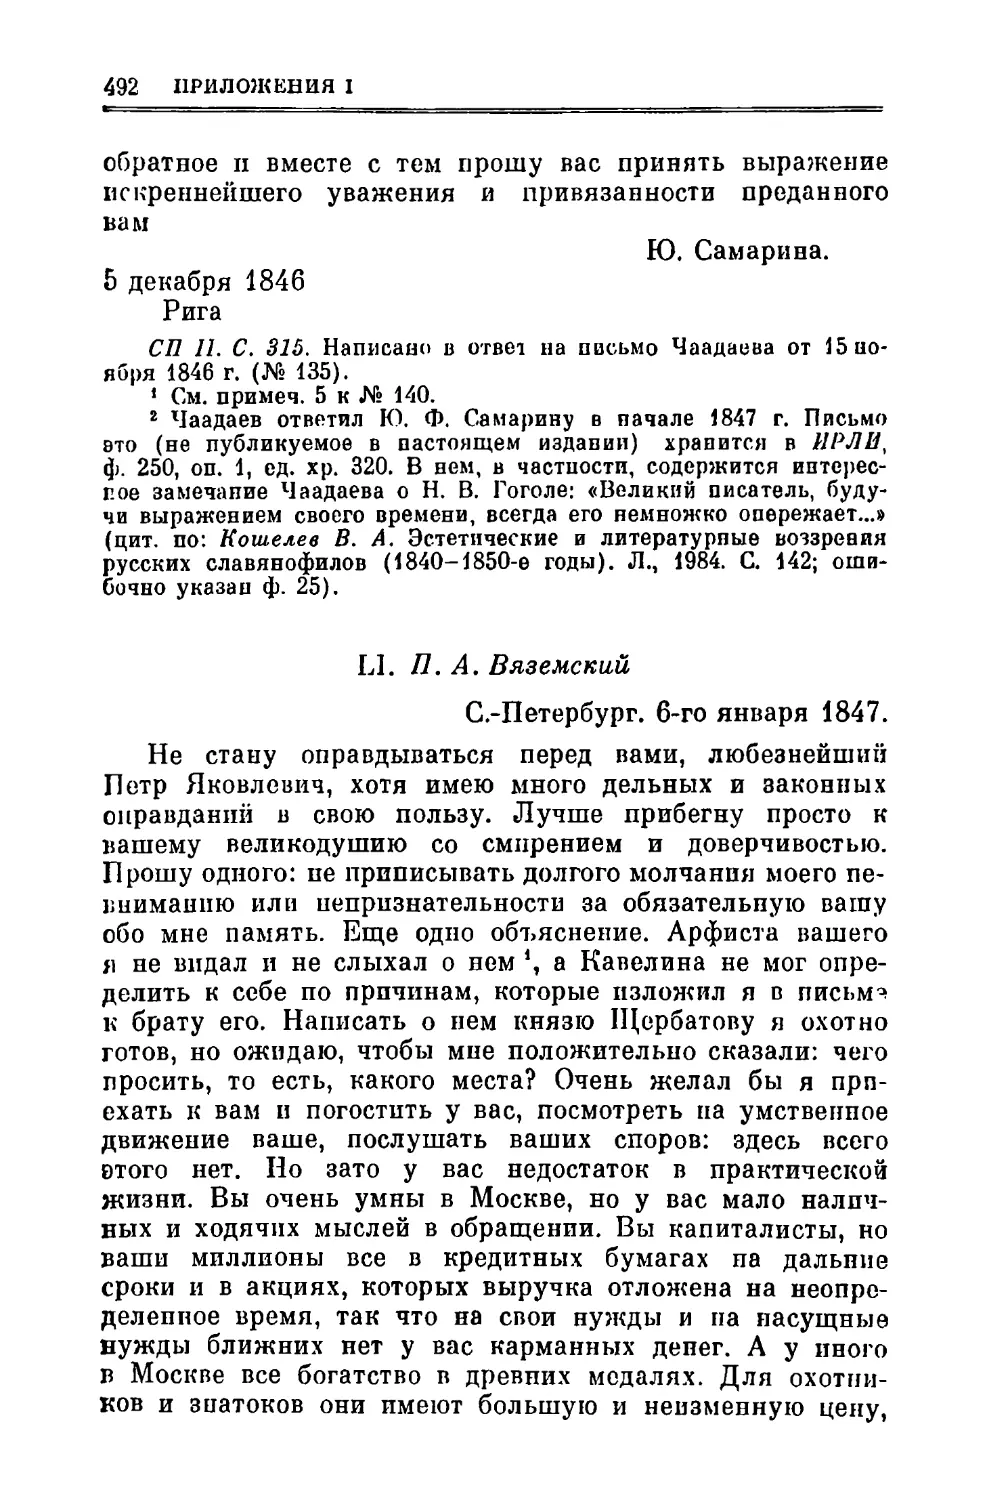 LI. Вяземский П.А. 6.І.1847